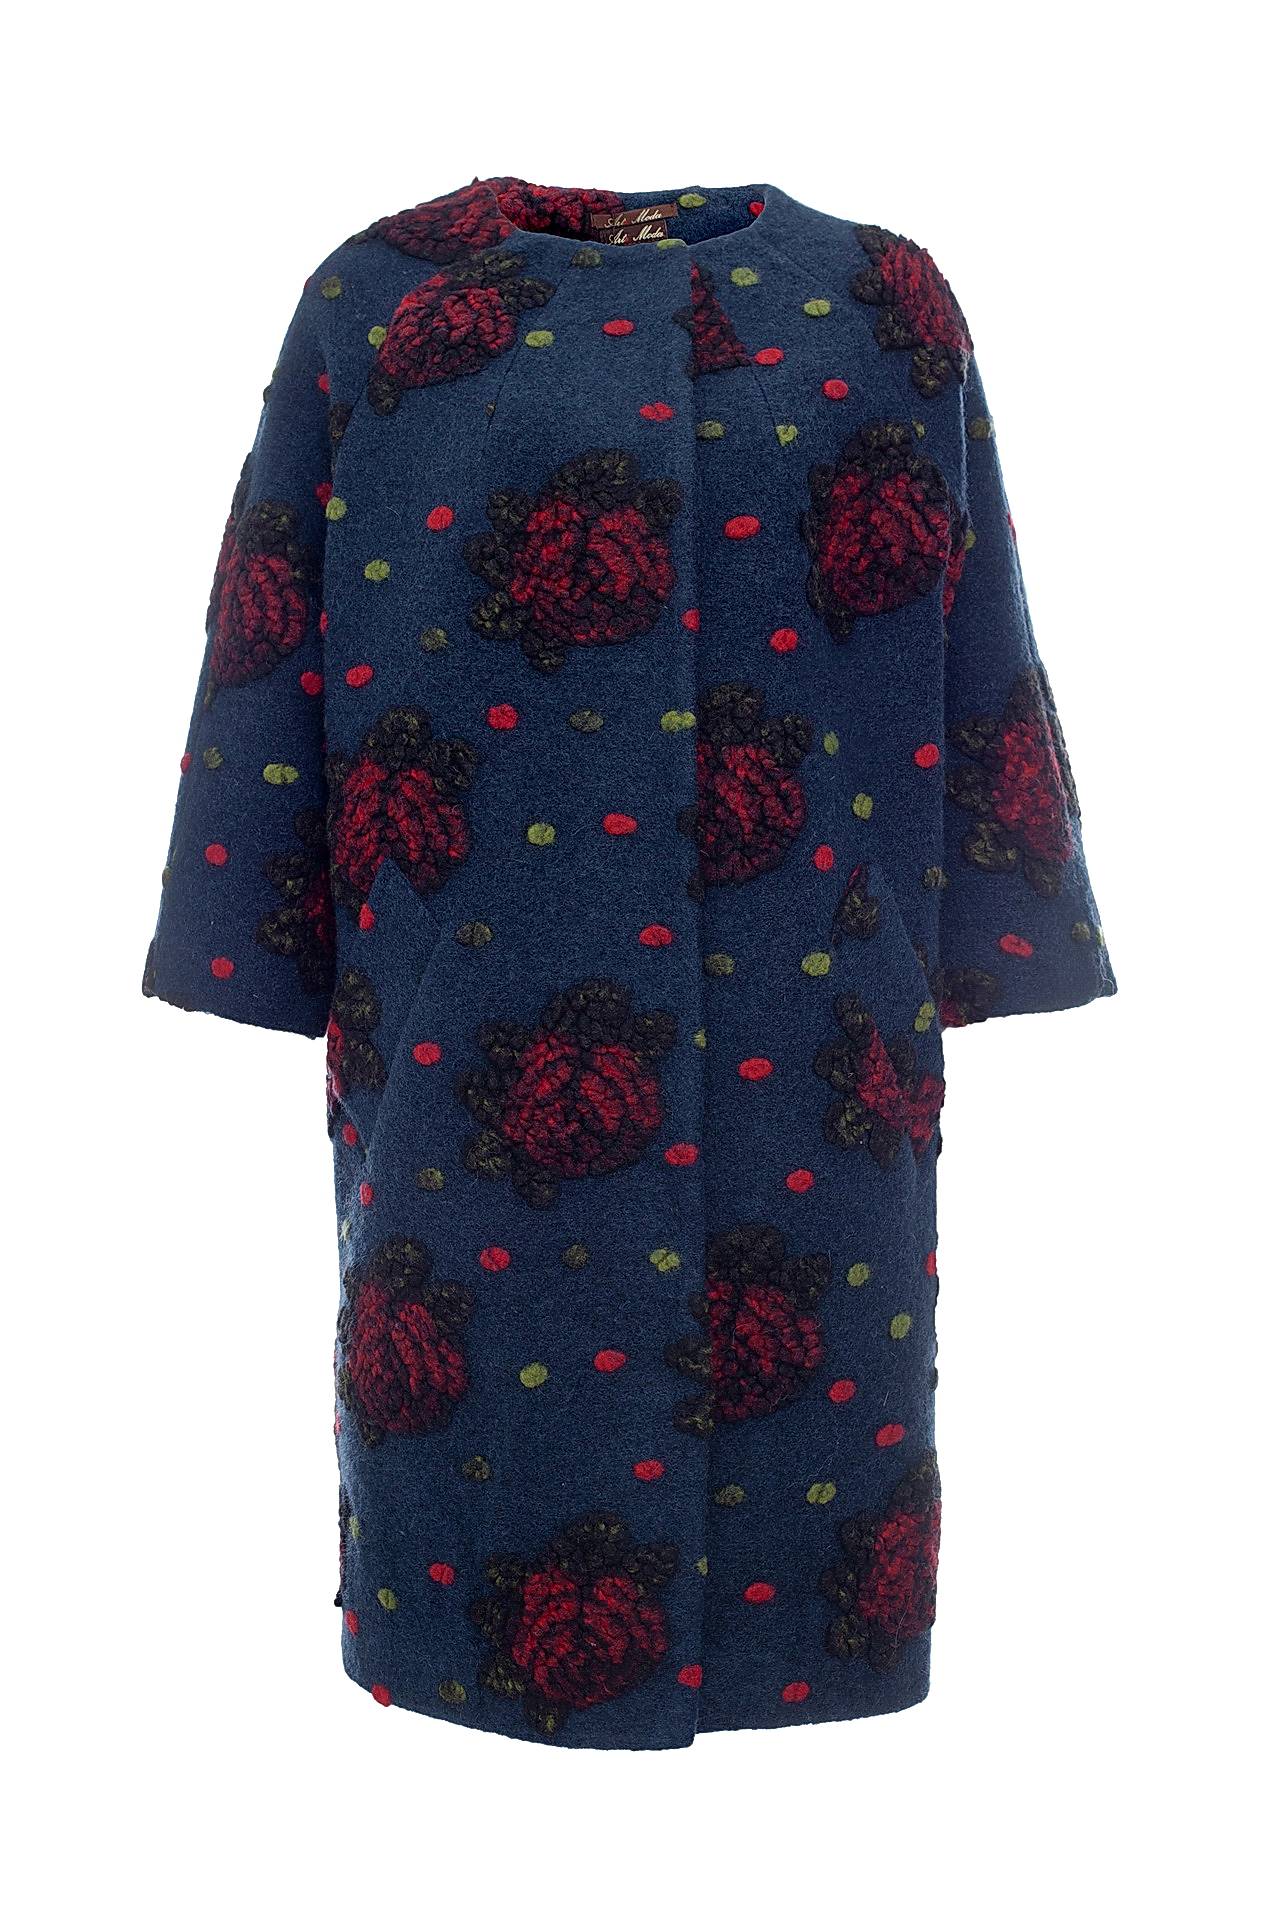 Одежда женская Пальто ALTA MODA (2264104/17.1). Купить за 15200 руб.